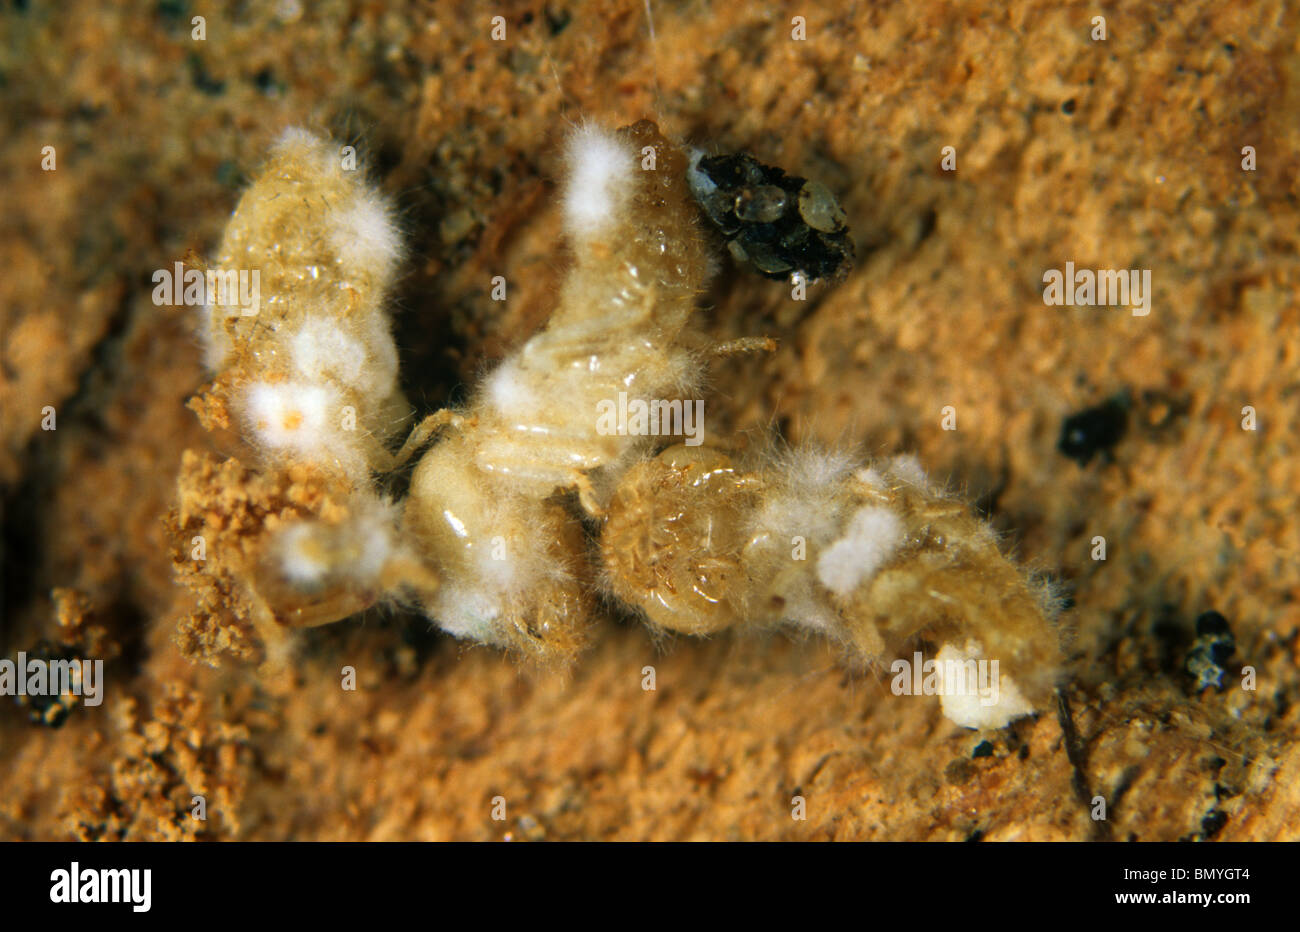 Les termites (Reticulitermes flavipes) tués par un champignon pathogène (Metarhizum spp.) Banque D'Images